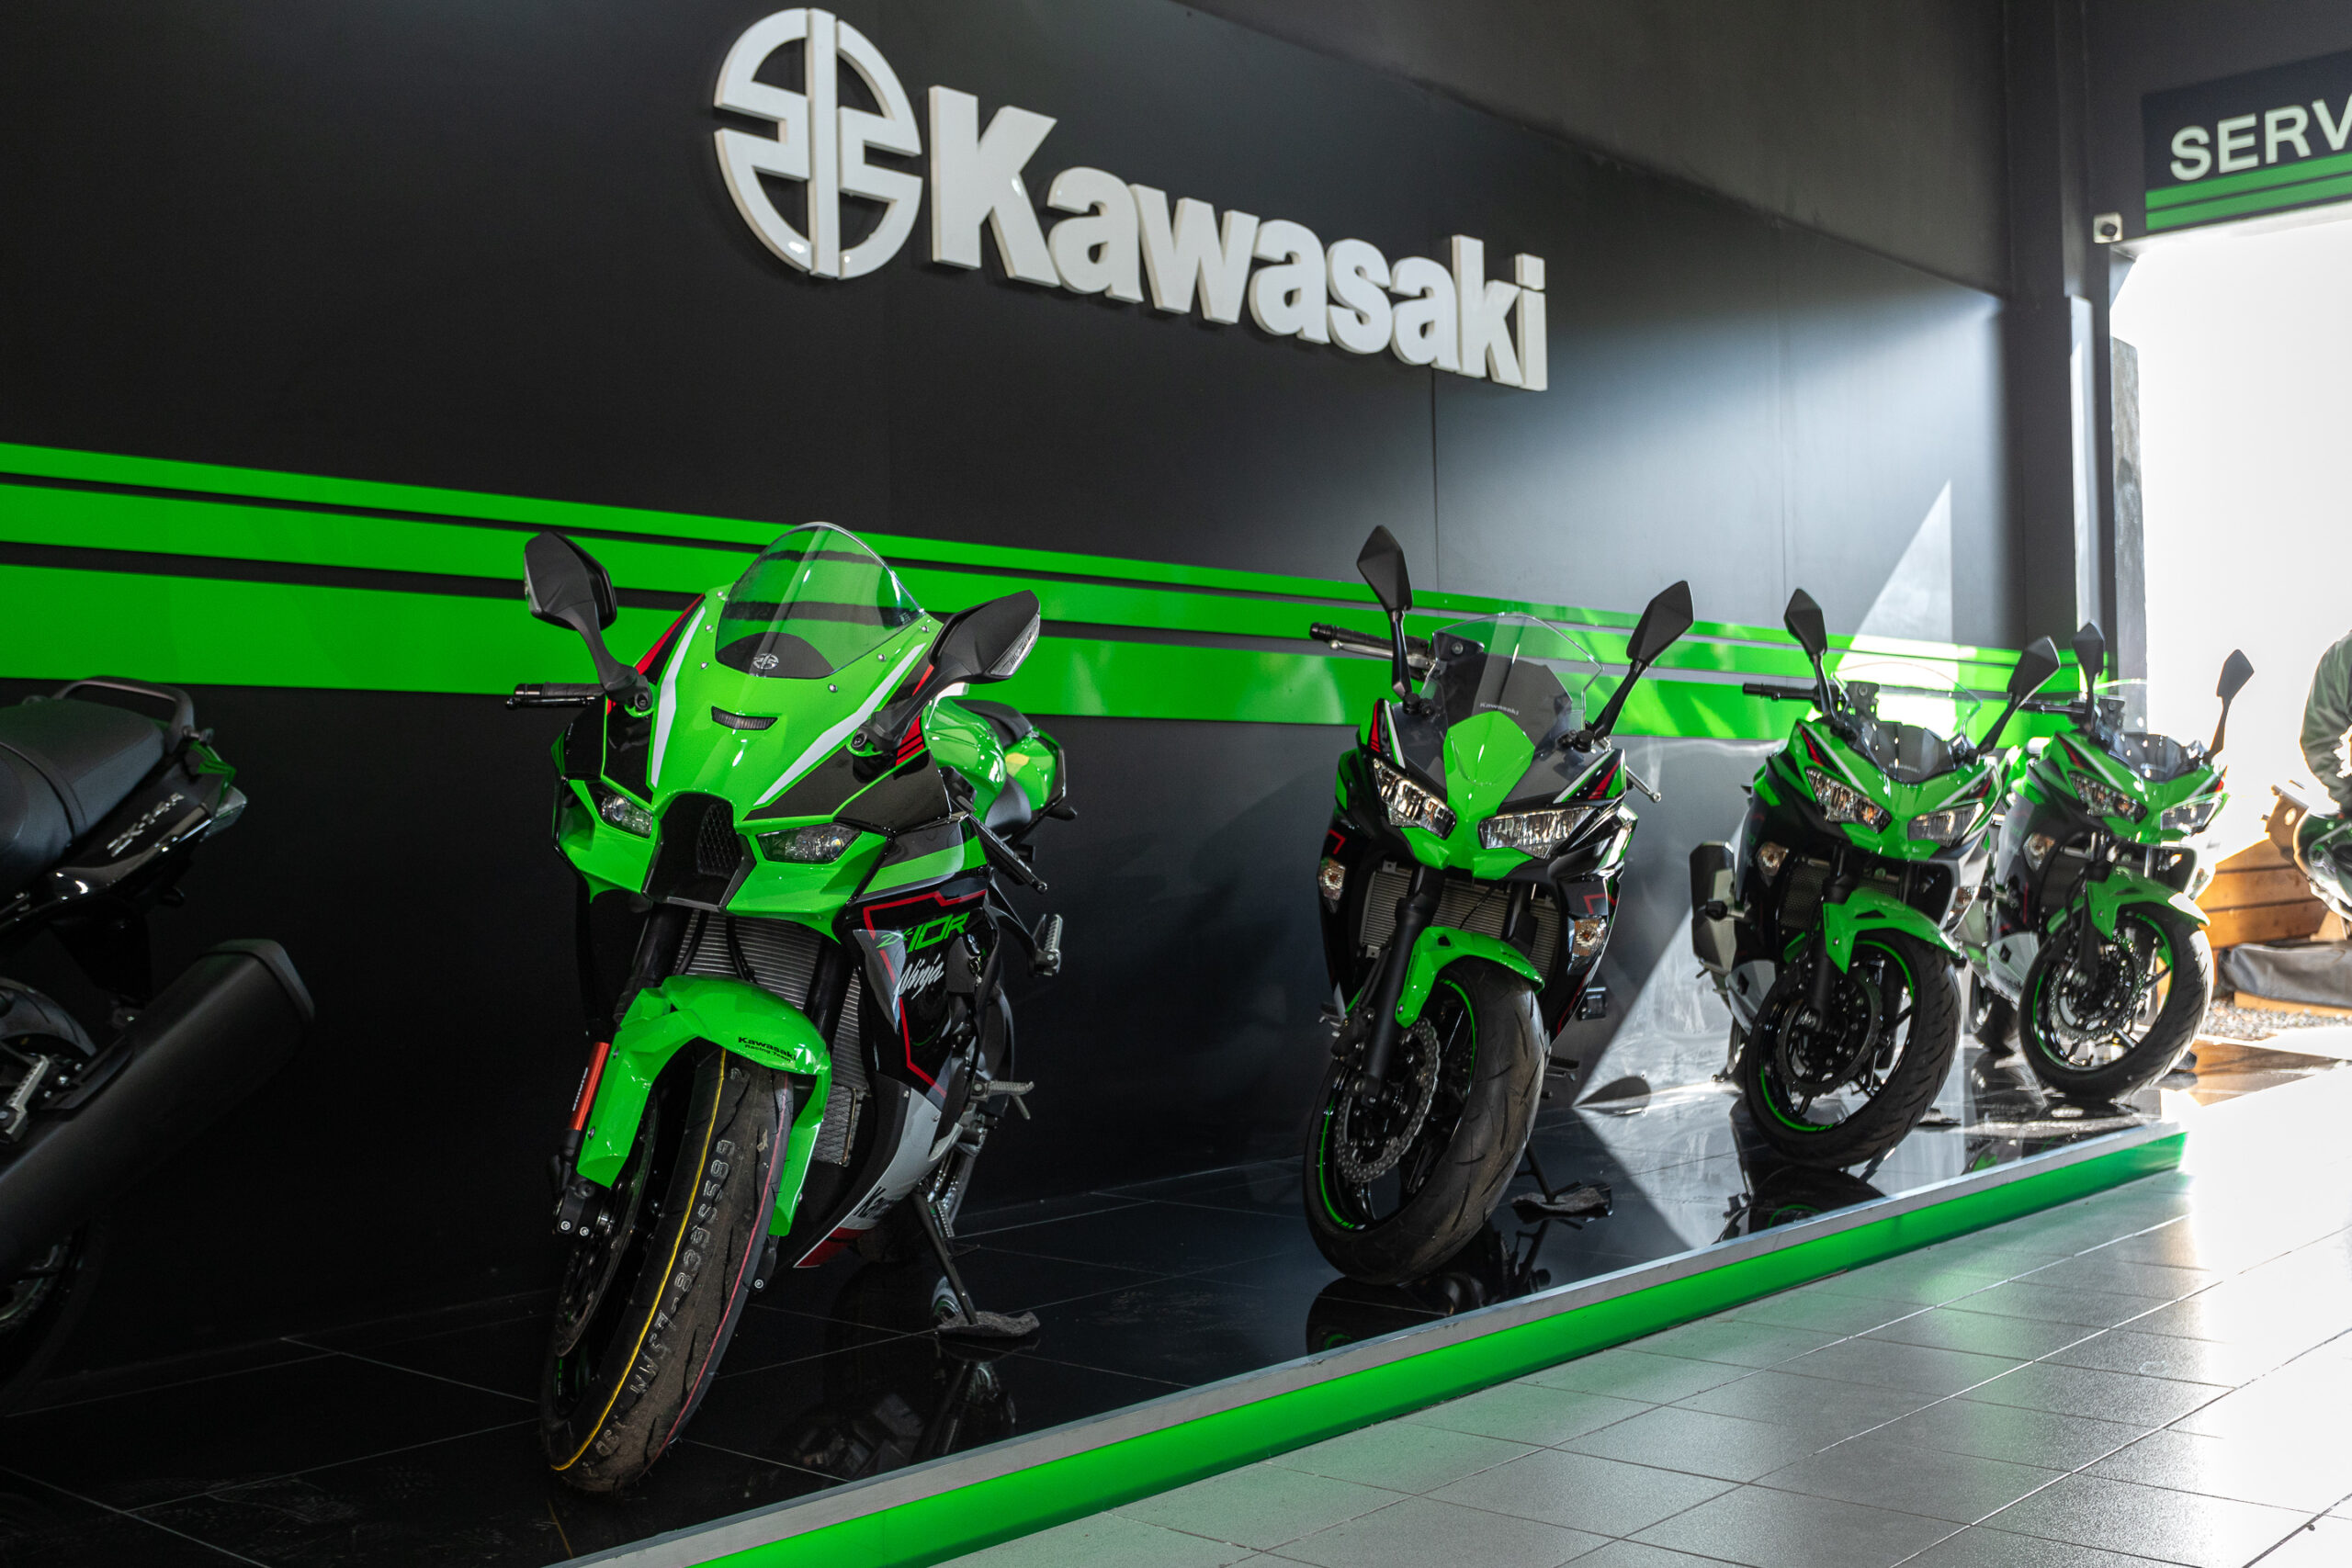 Kawasaki inaugura un nuevo concesionario exclusivo